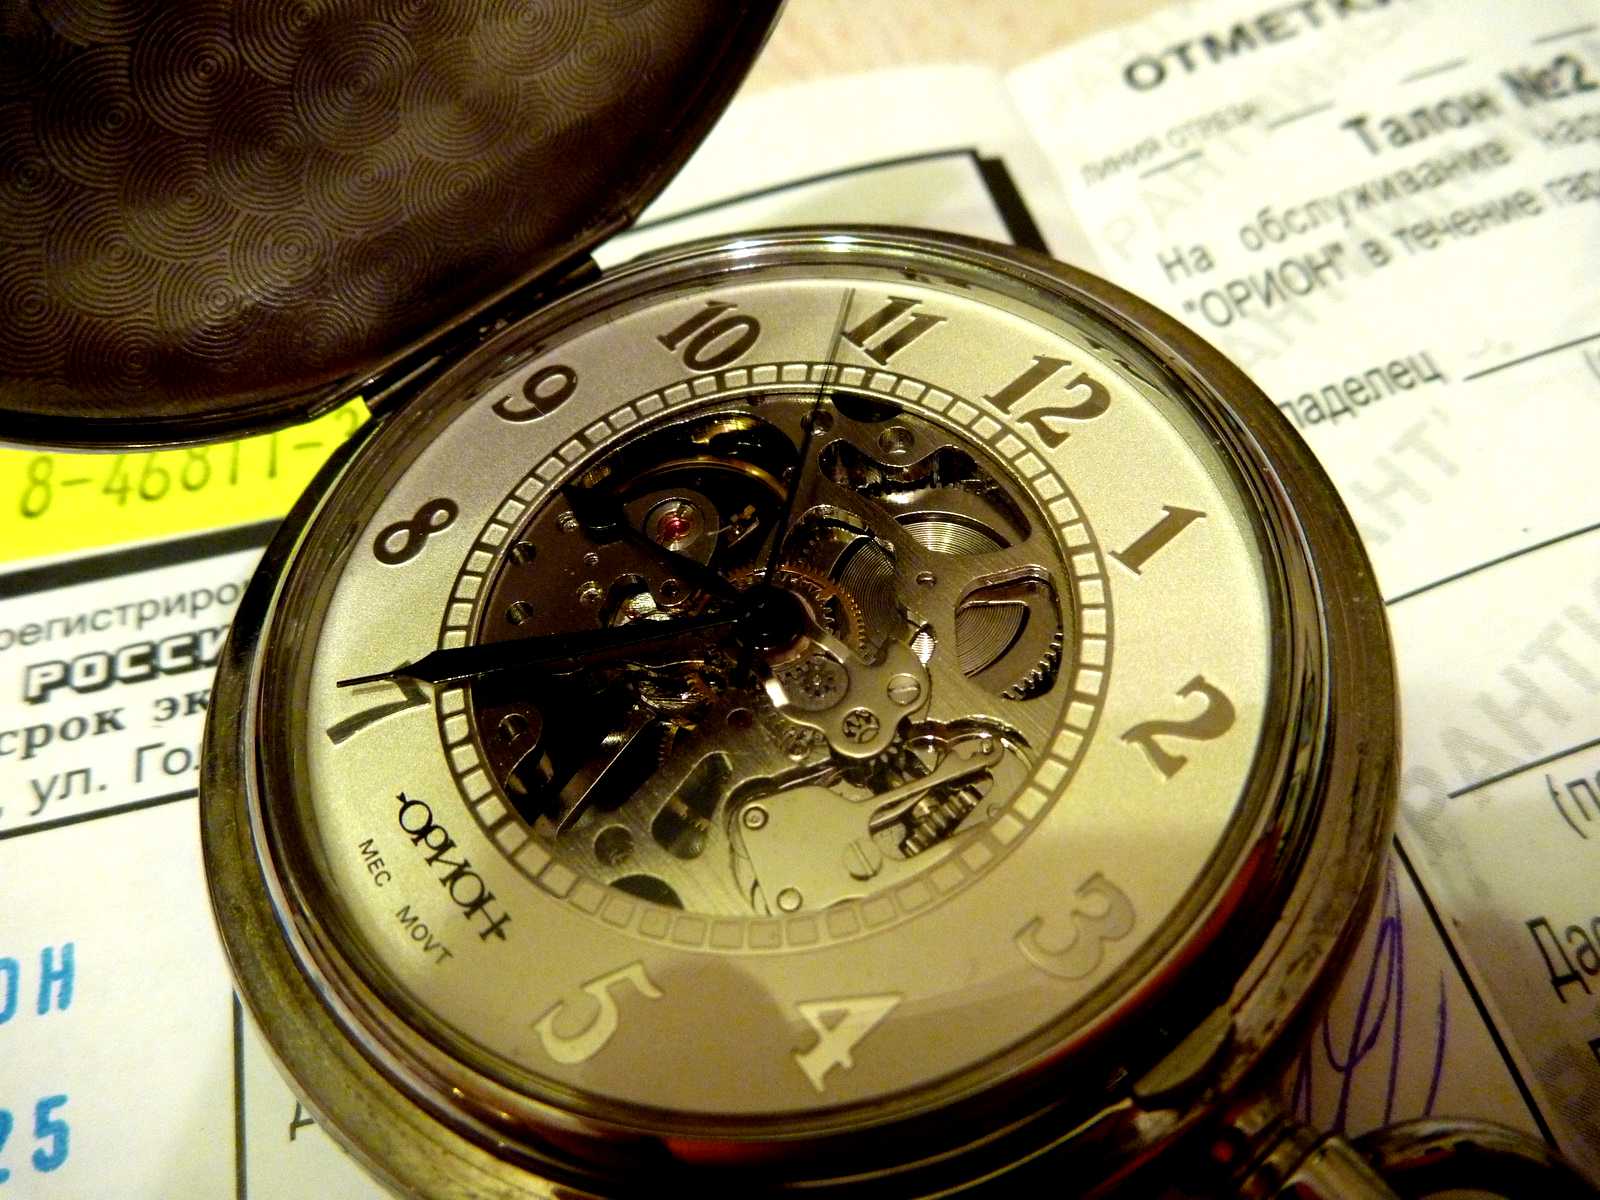 Часы Орион скелетон. Карманные часы Орион скелетон. Орион часы мужские карманные. Часы Орион скелетон 2002. 17 тыс часов